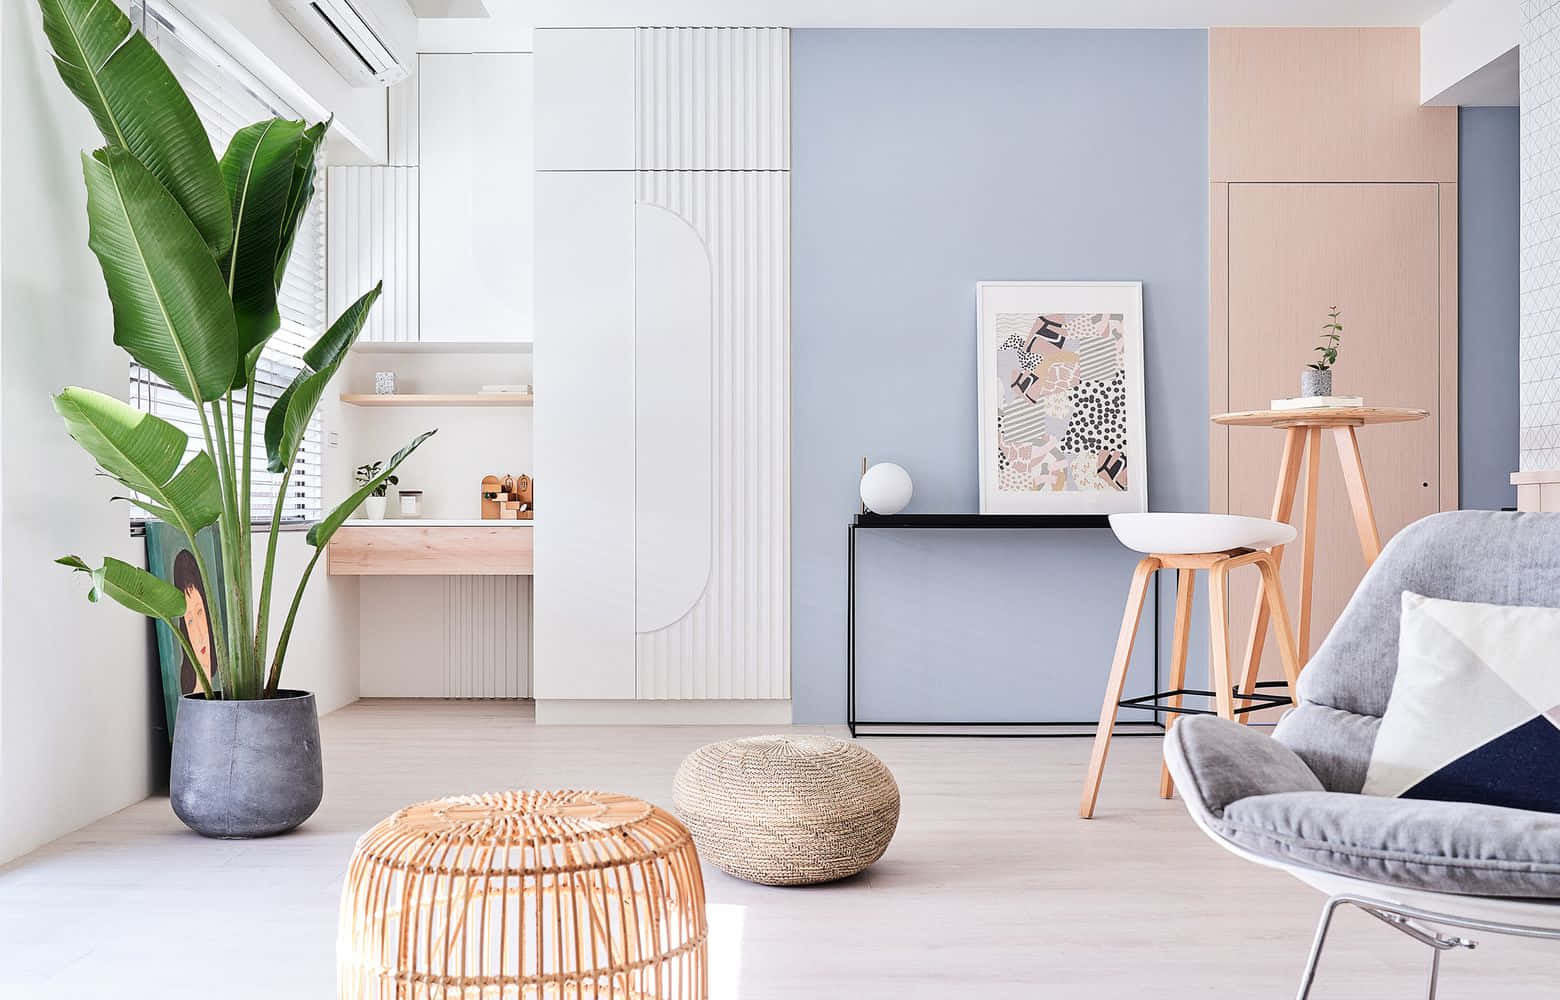 Elegant Living Room Interior Design